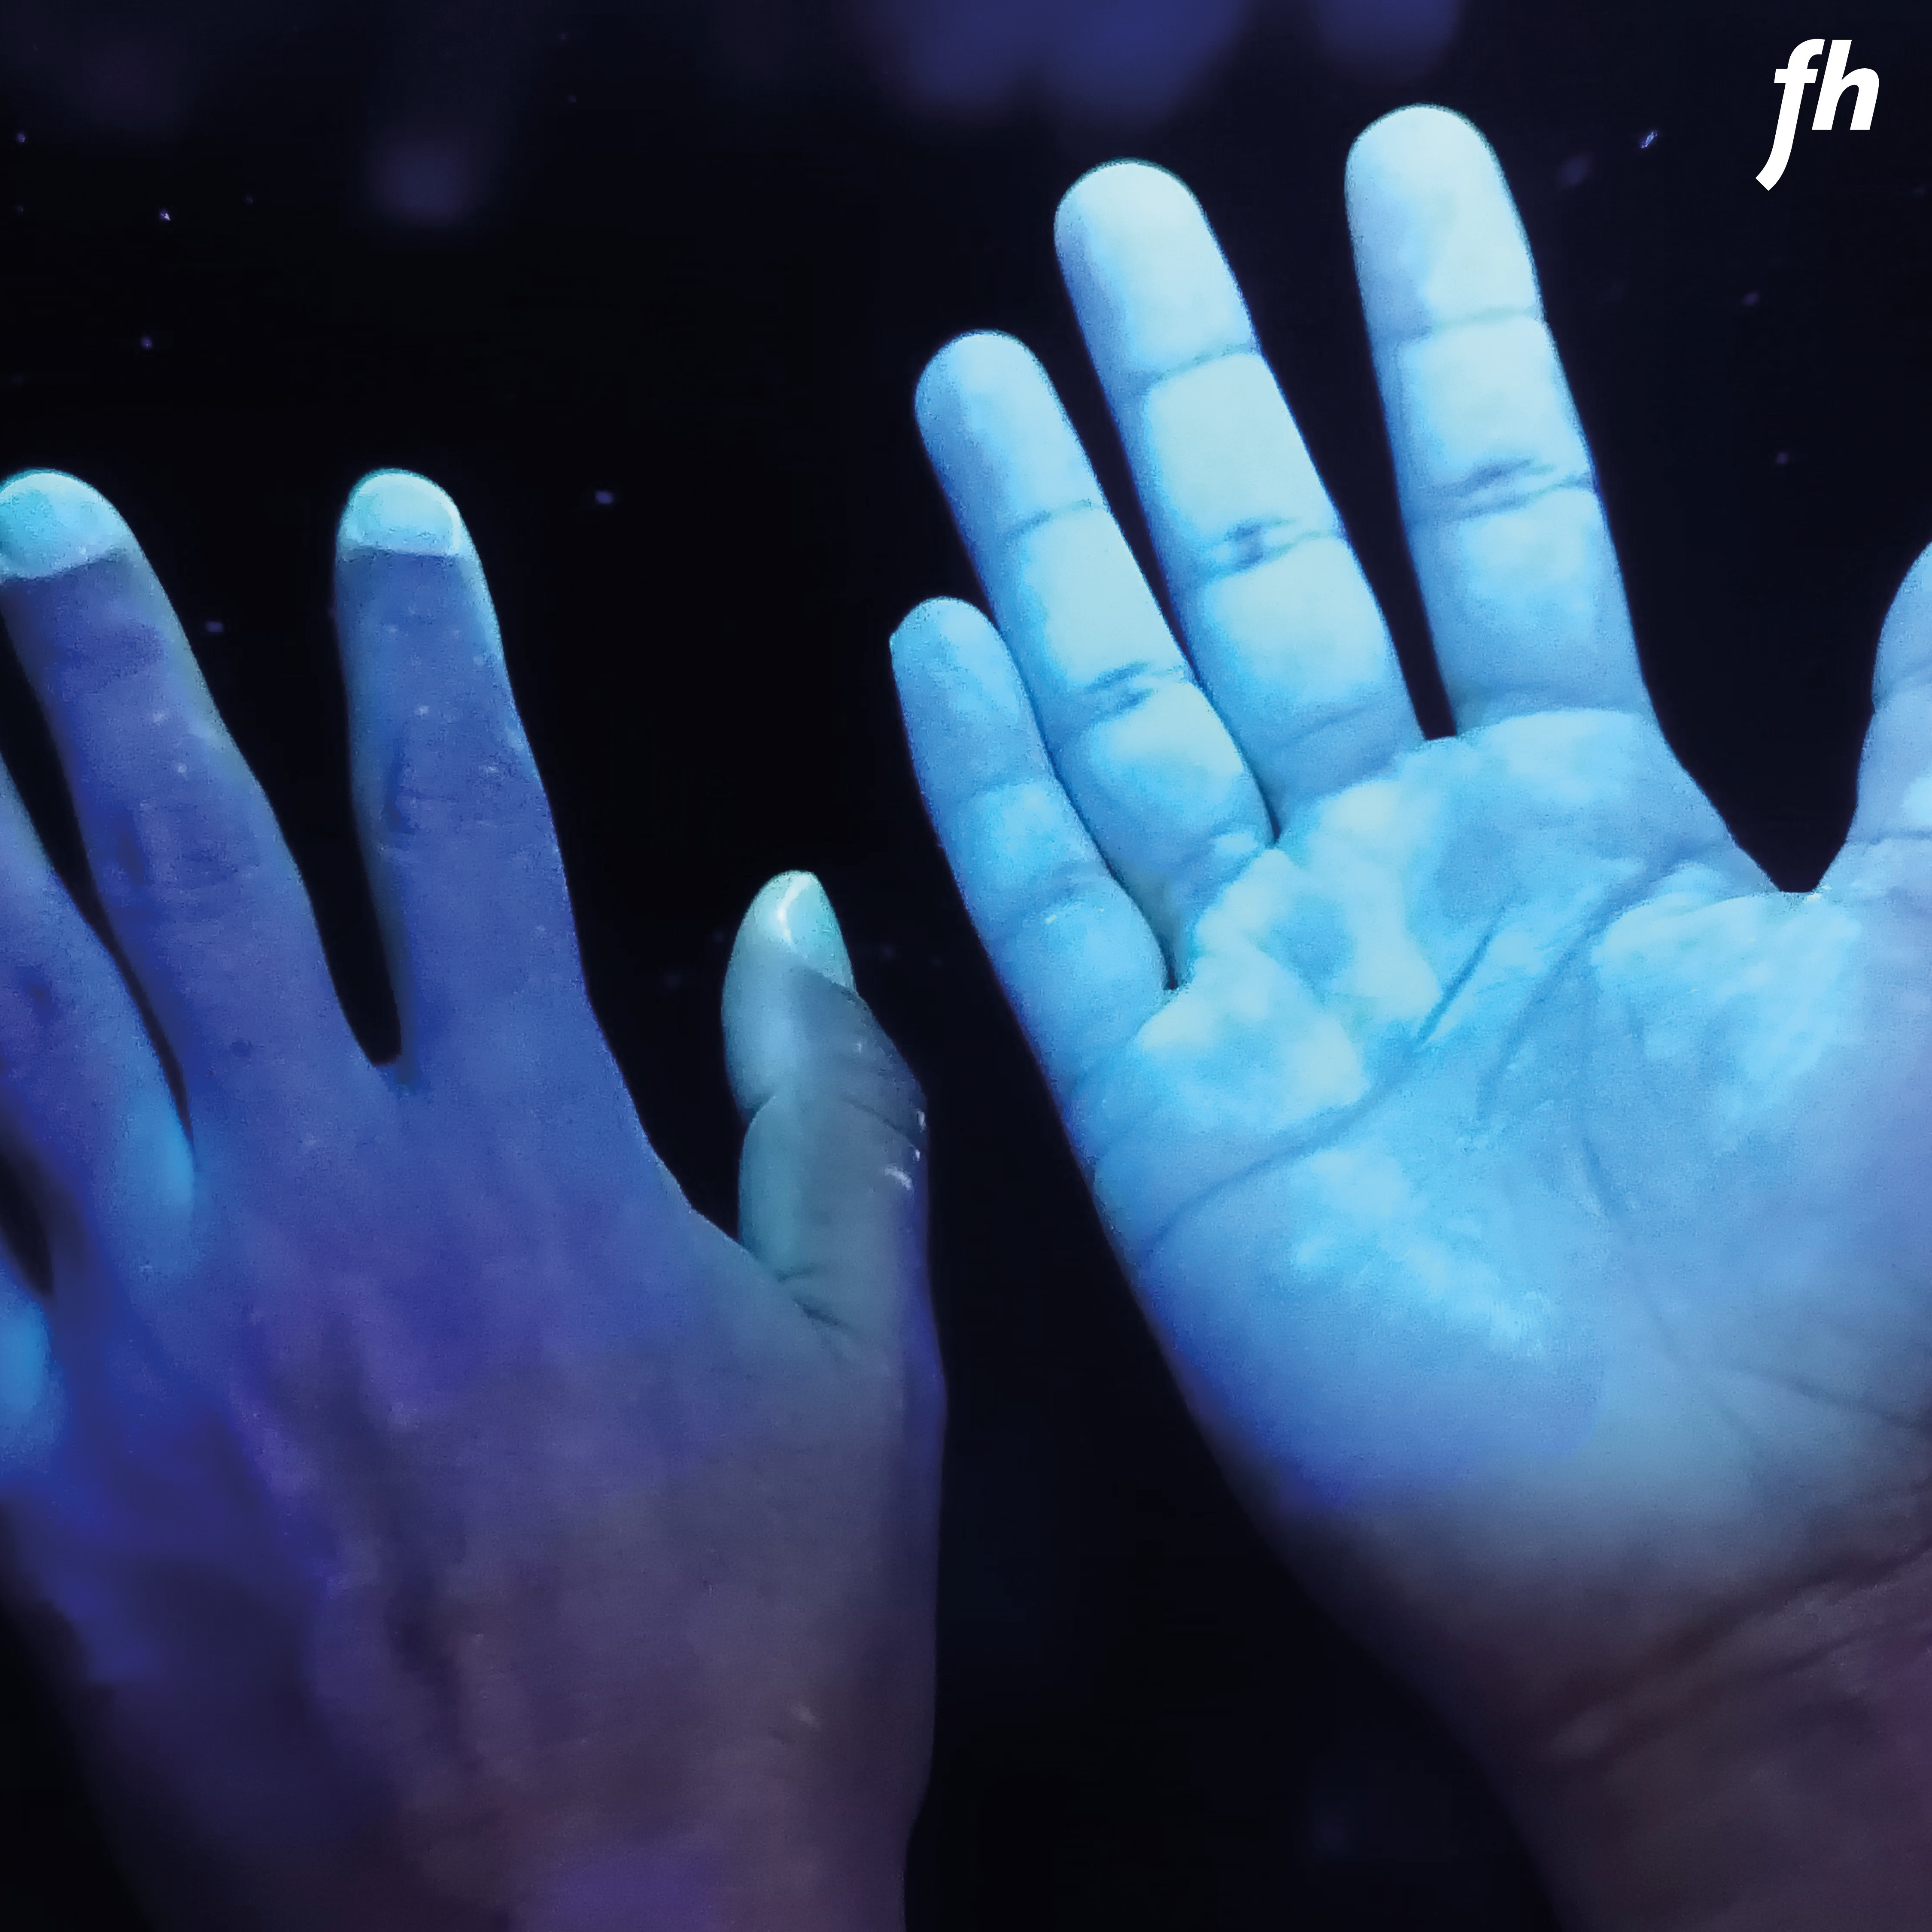 Hände unter UV-Licht um die fluoreszierende Flüssigkeit sichtbar zu machen. 